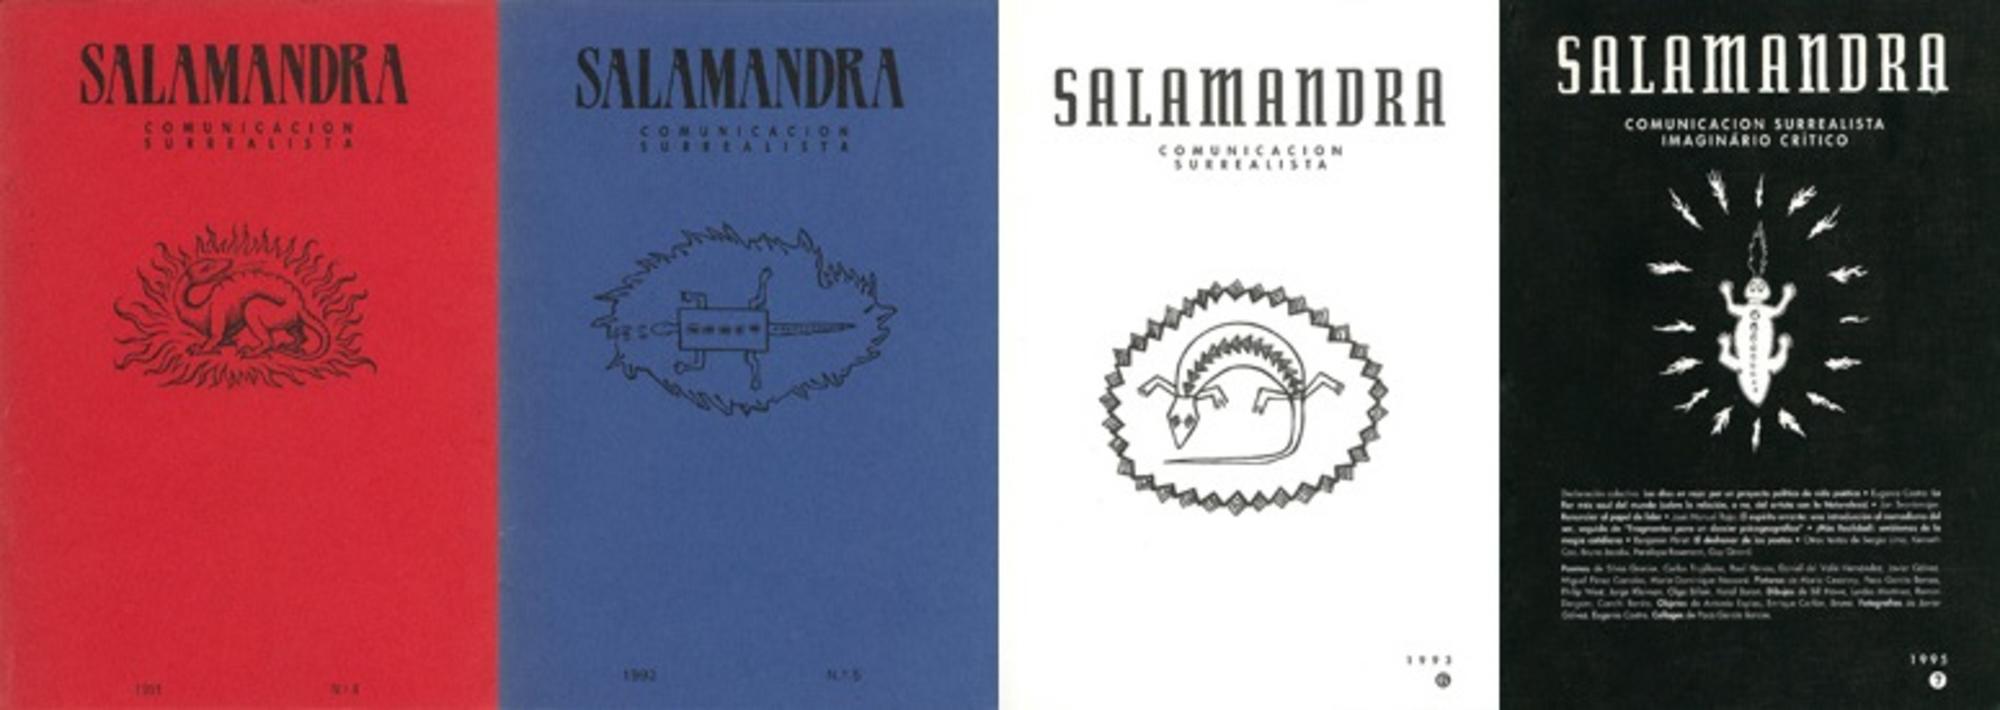 Ejemplares de la revista Salamandra, Grupo surrealista de Madrid